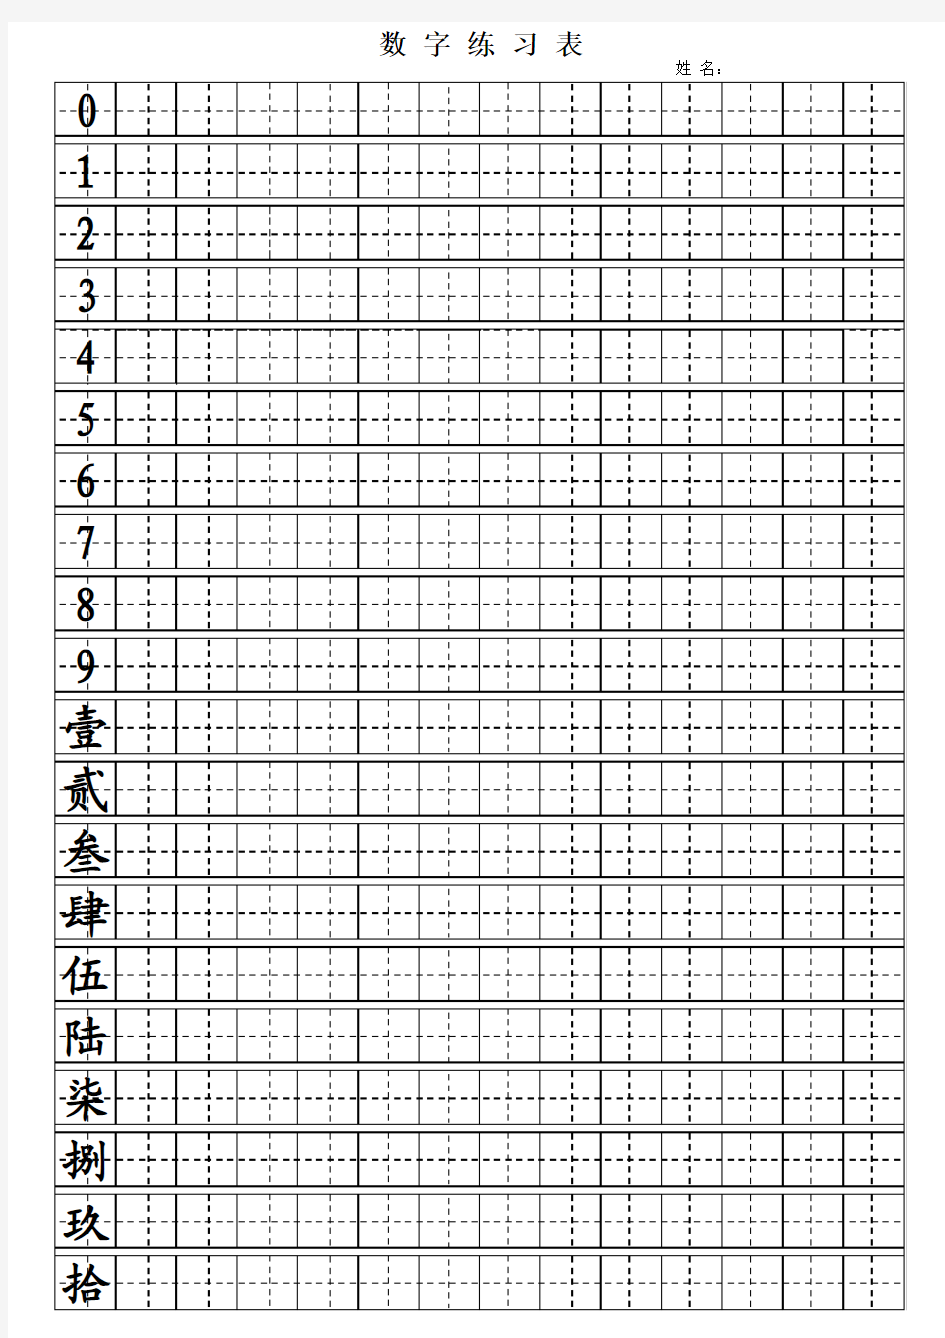 Excel_田字格大写数字练习表